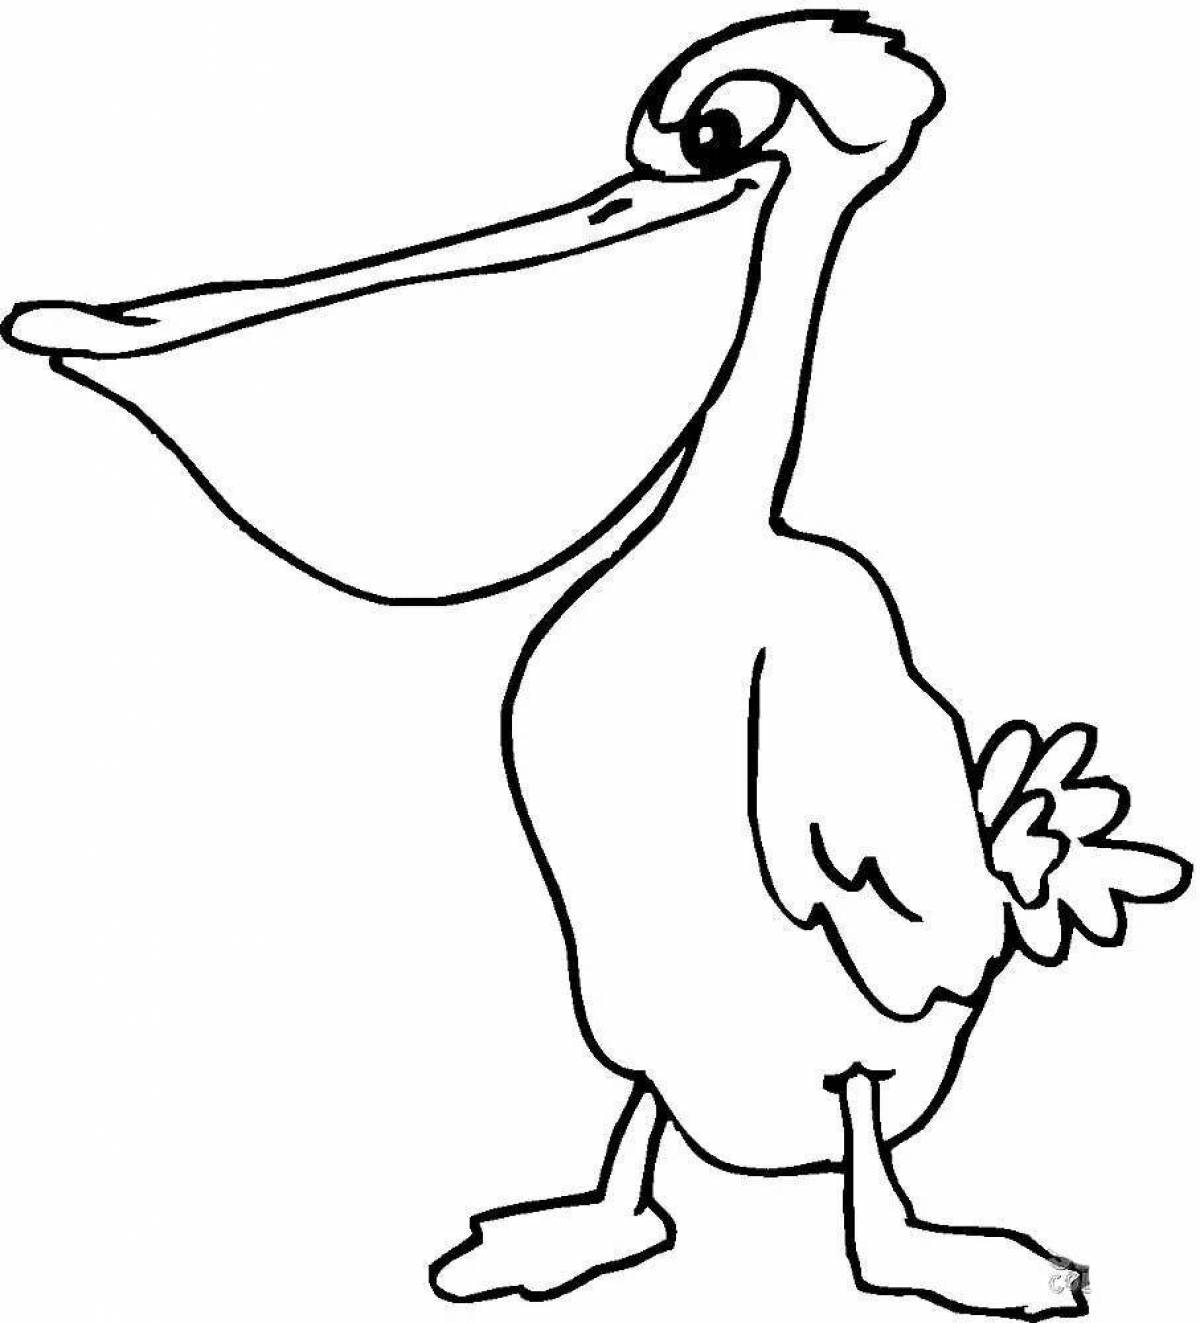 Увлекательная раскраска пеликан для детей